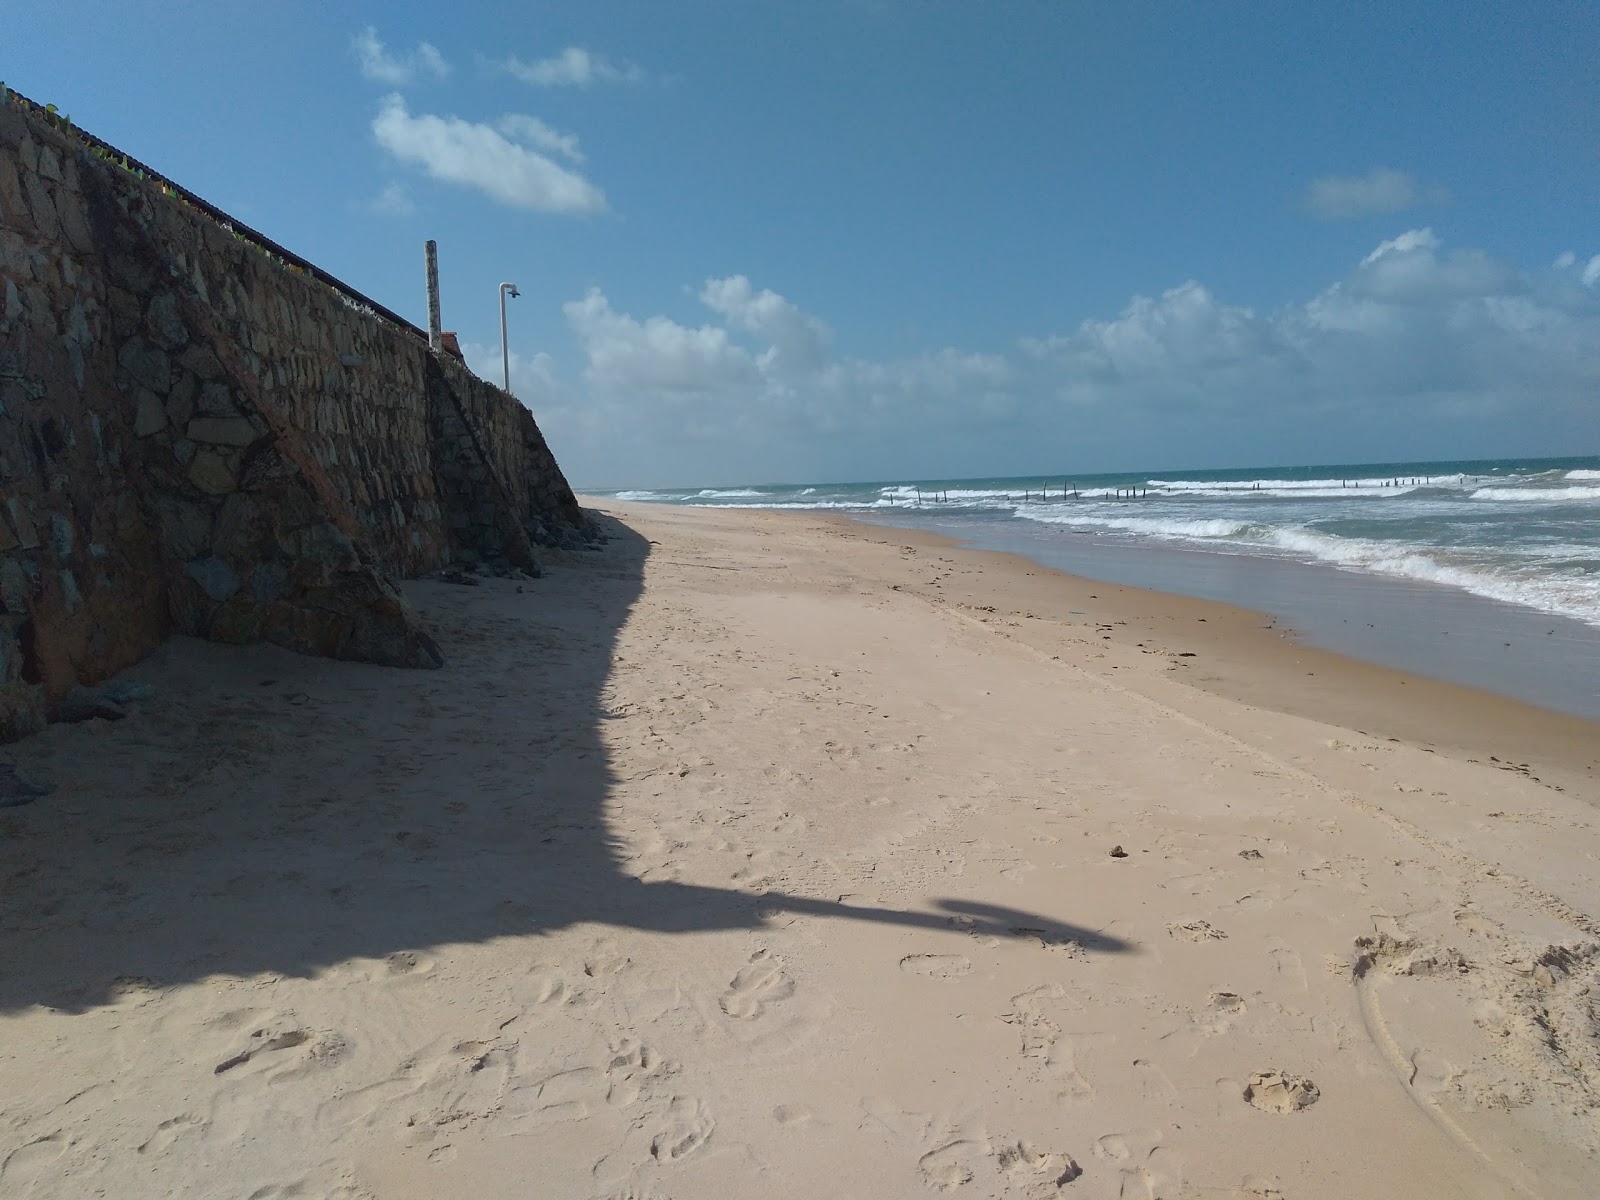 Praia da Taiba'in fotoğrafı çok temiz temizlik seviyesi ile